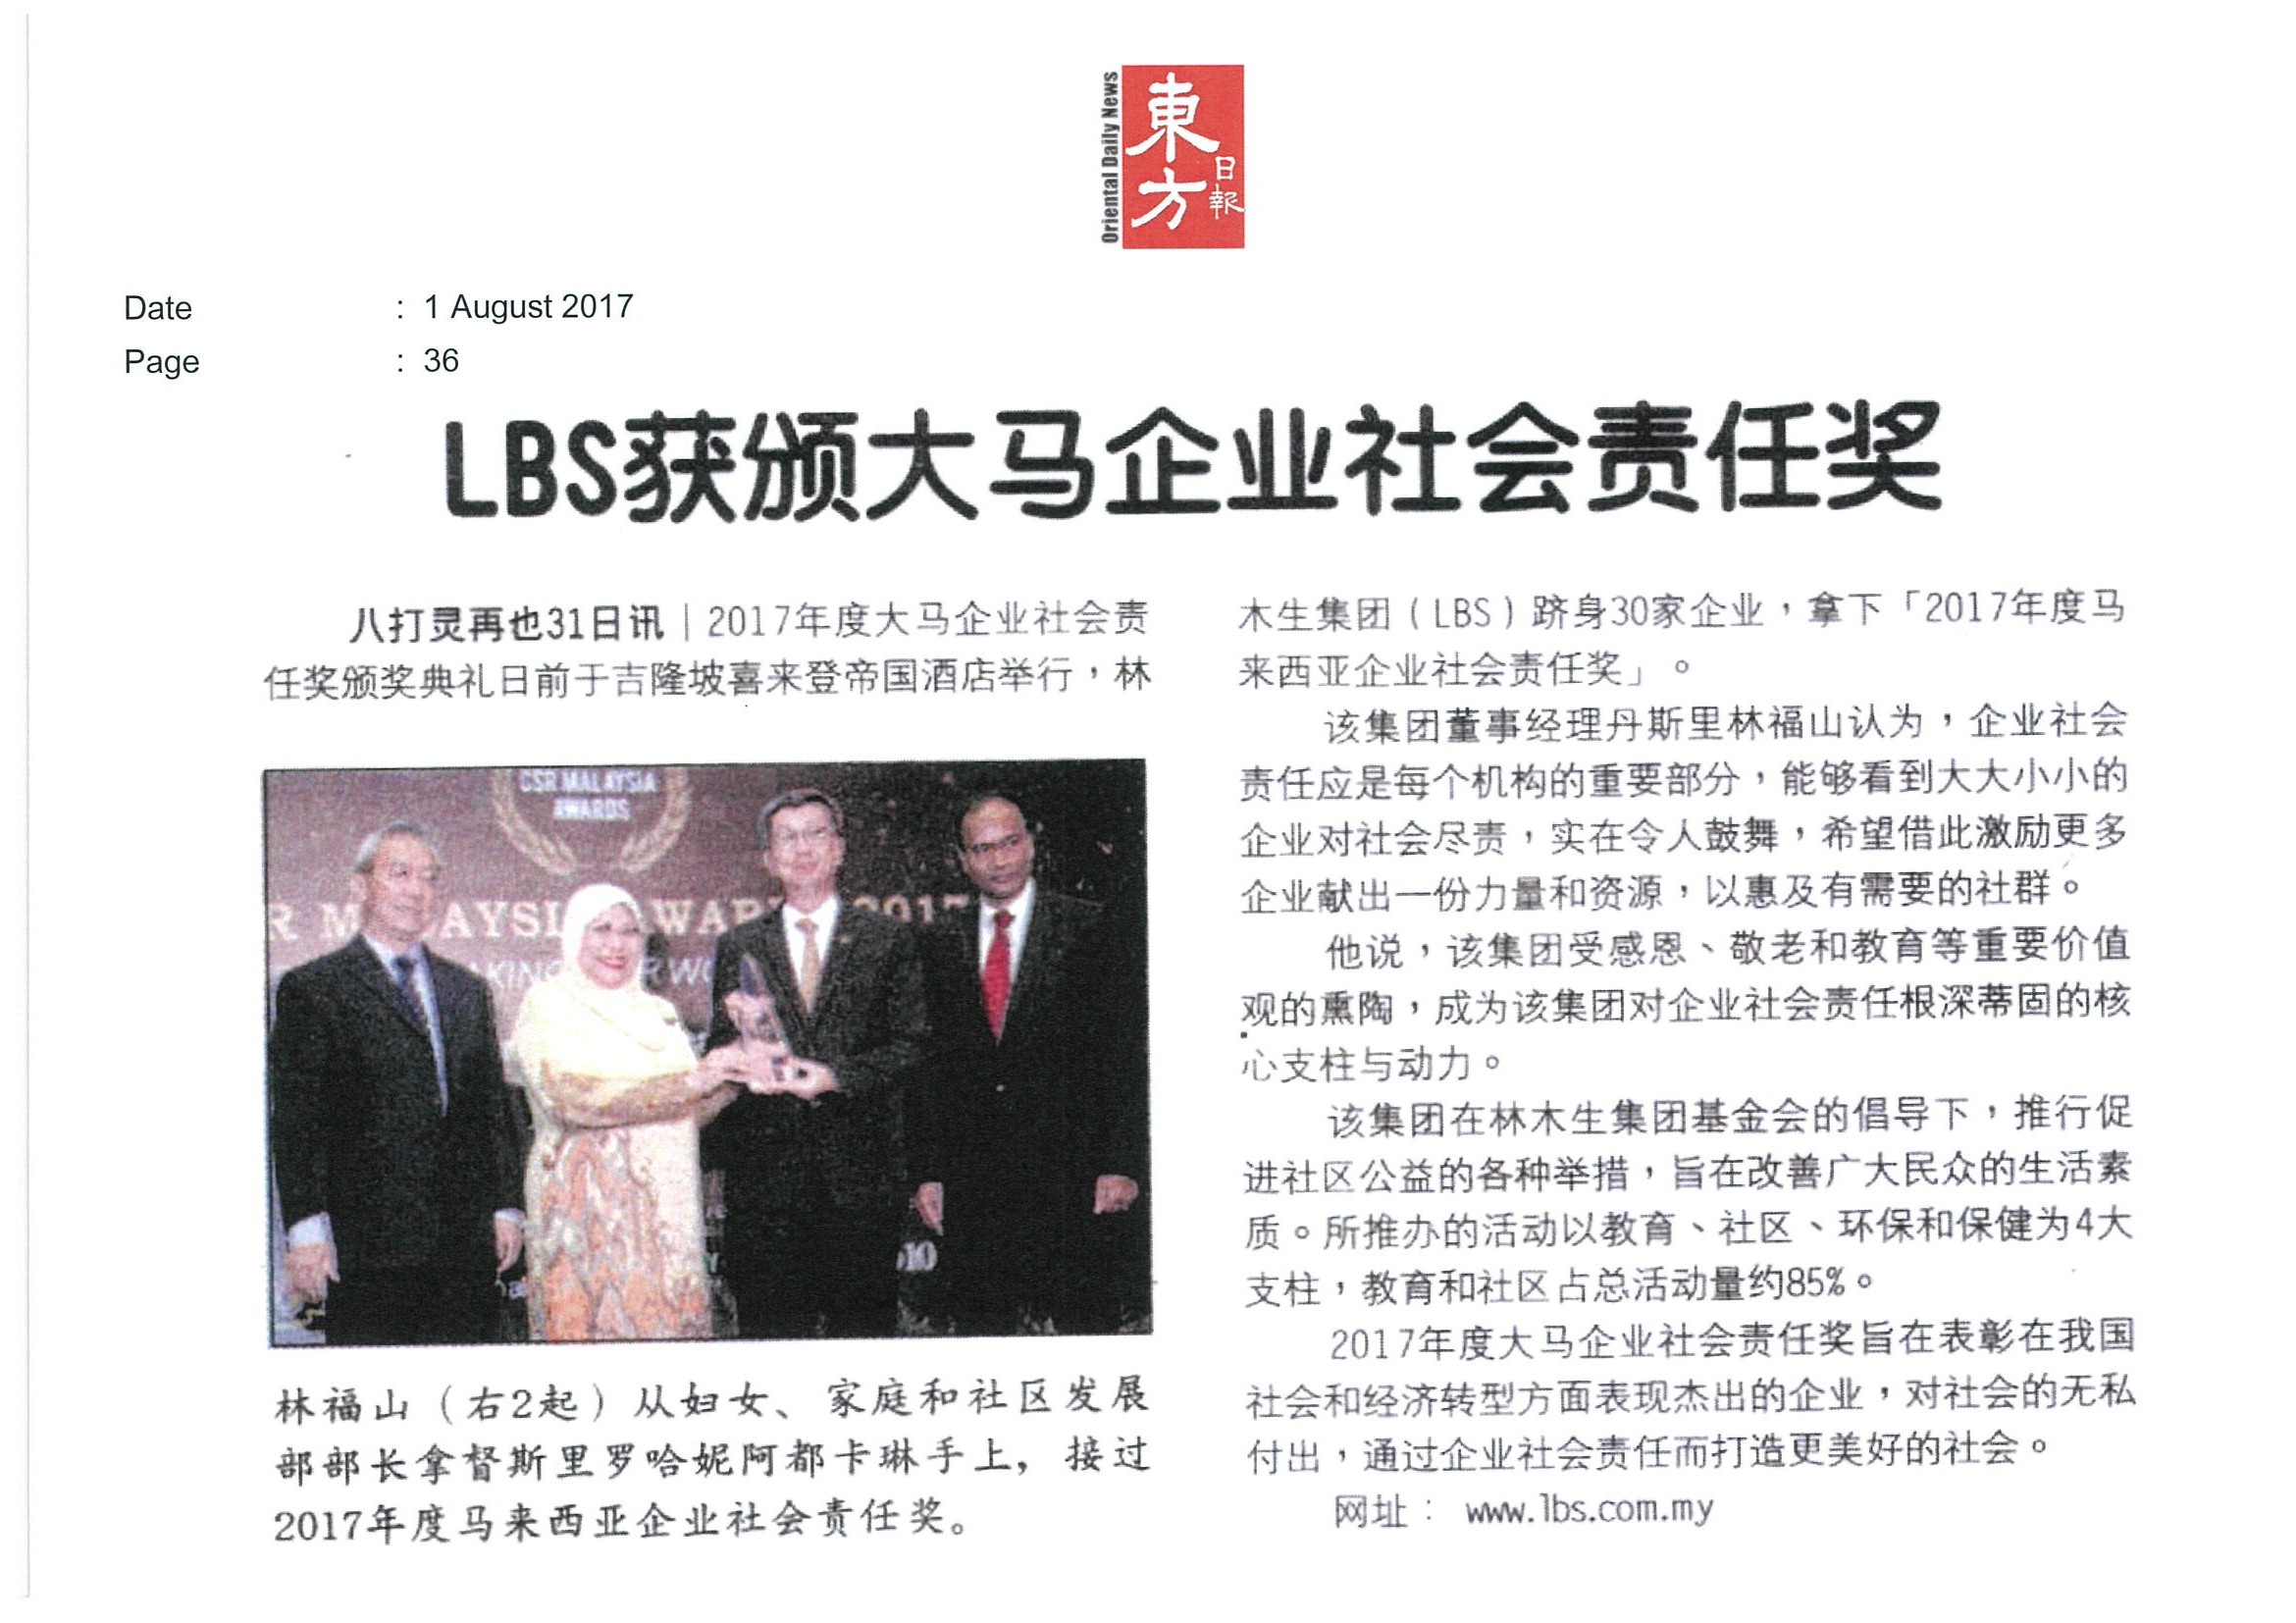 2017.08.01 Oriental Daily – LBS won CSR Malaysia Award